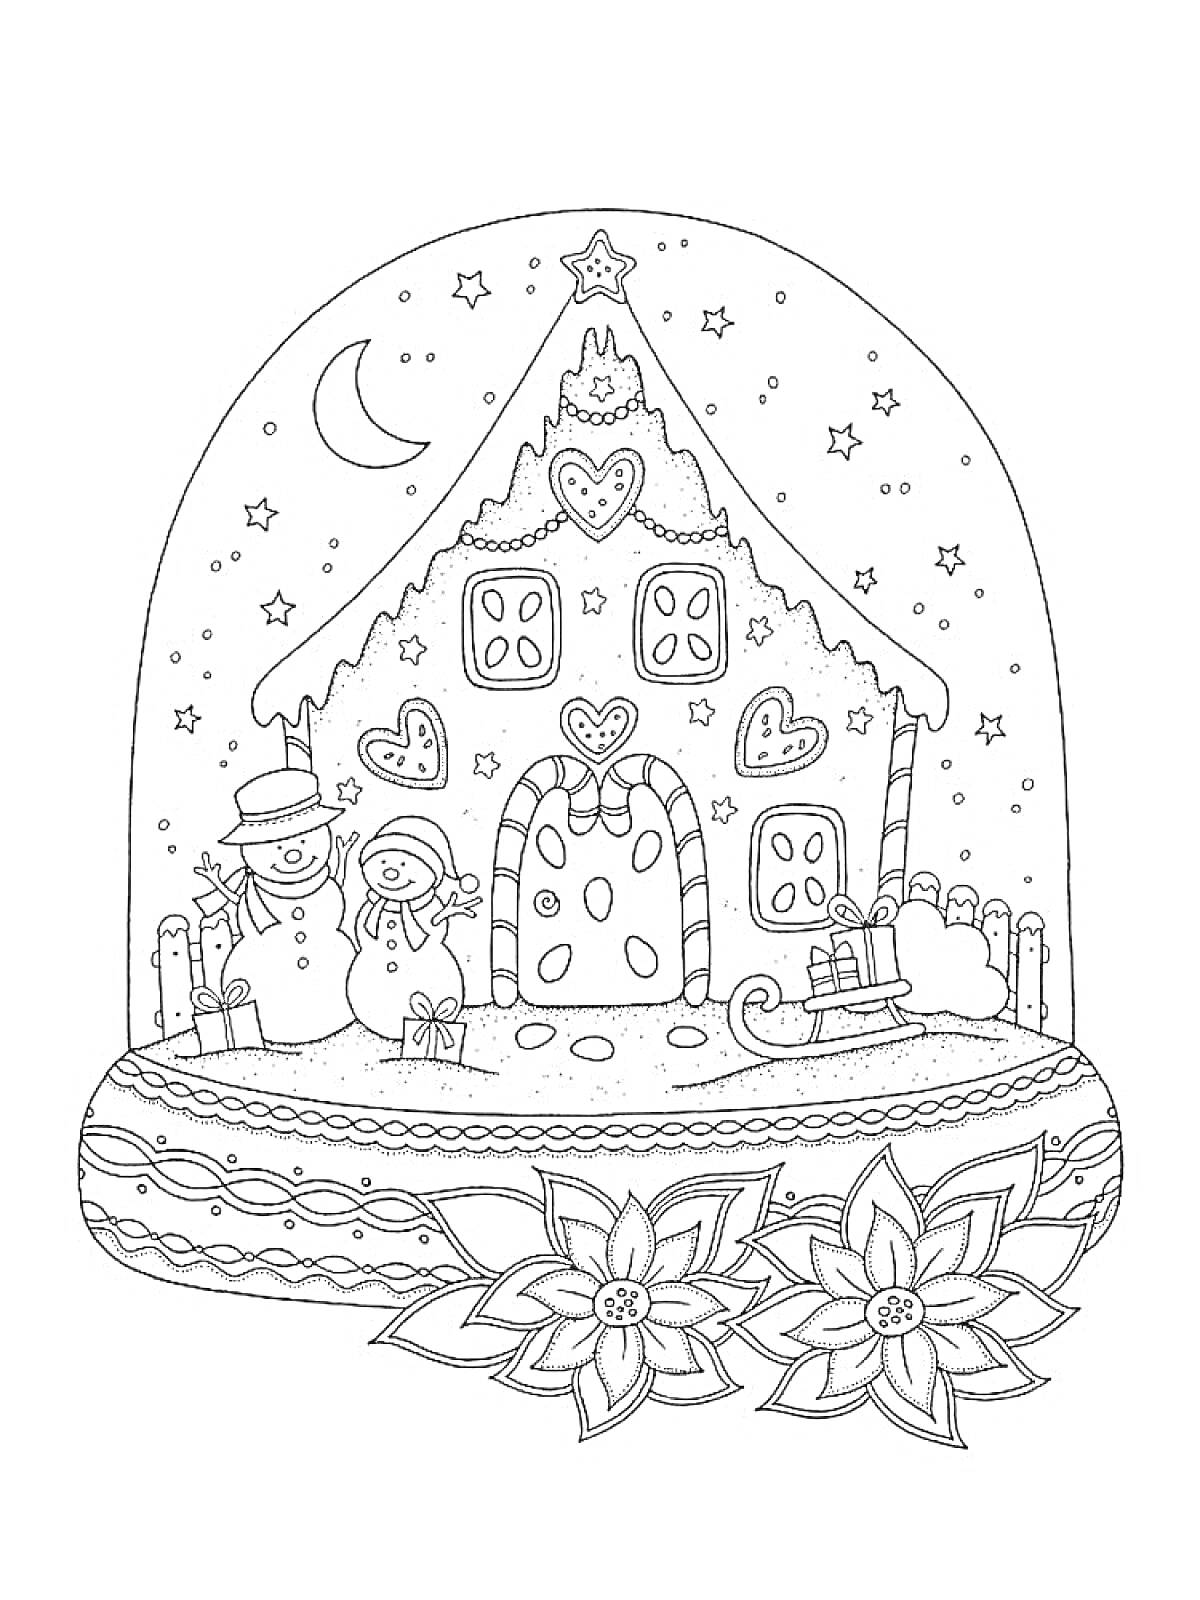 Раскраска Пряничный домик в снежном шаре с снеговиками, санками, звездами, цветами и месяцем